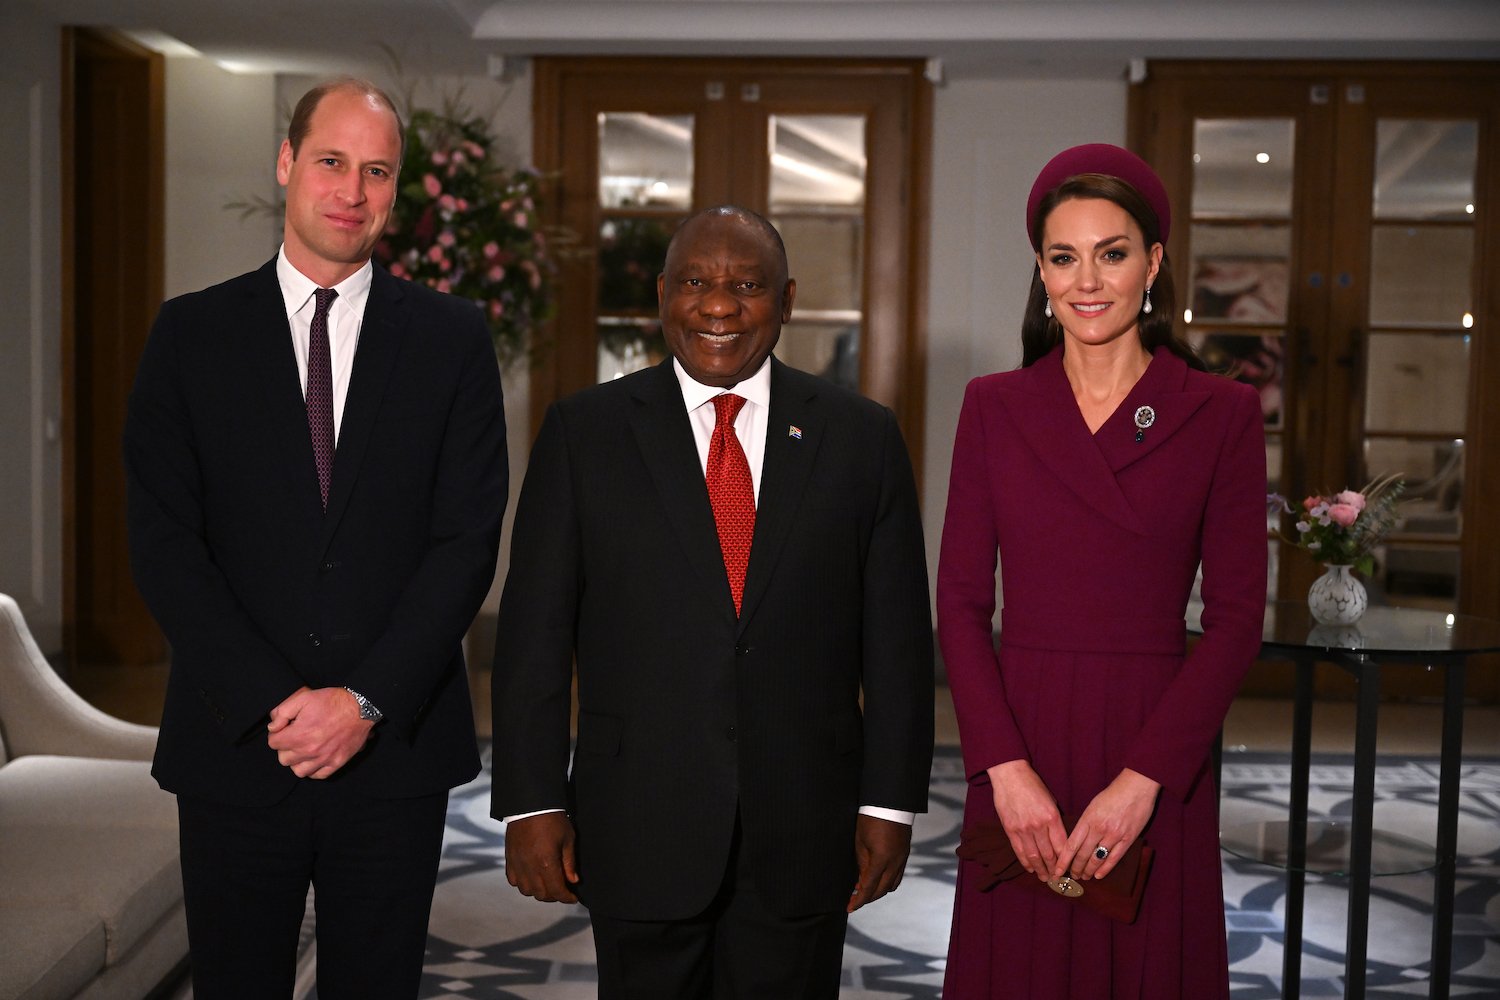 Un expert en langage corporel souligne le geste subtil de Kate Middleton qui a permis à Camilla Parker Bowles de briller lors de sa visite d'État